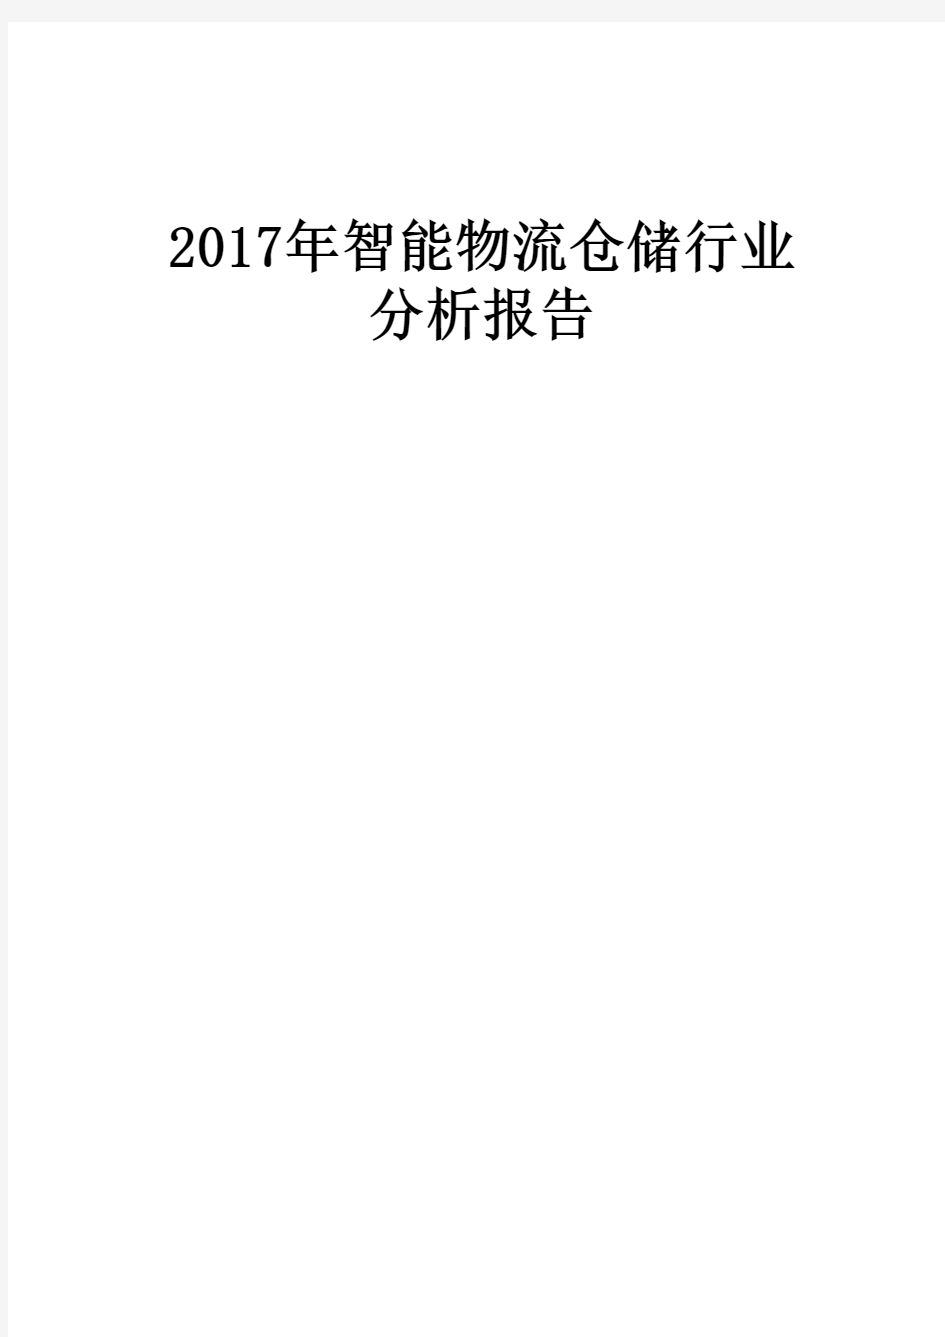 2017年智能物流仓储行业分析报告